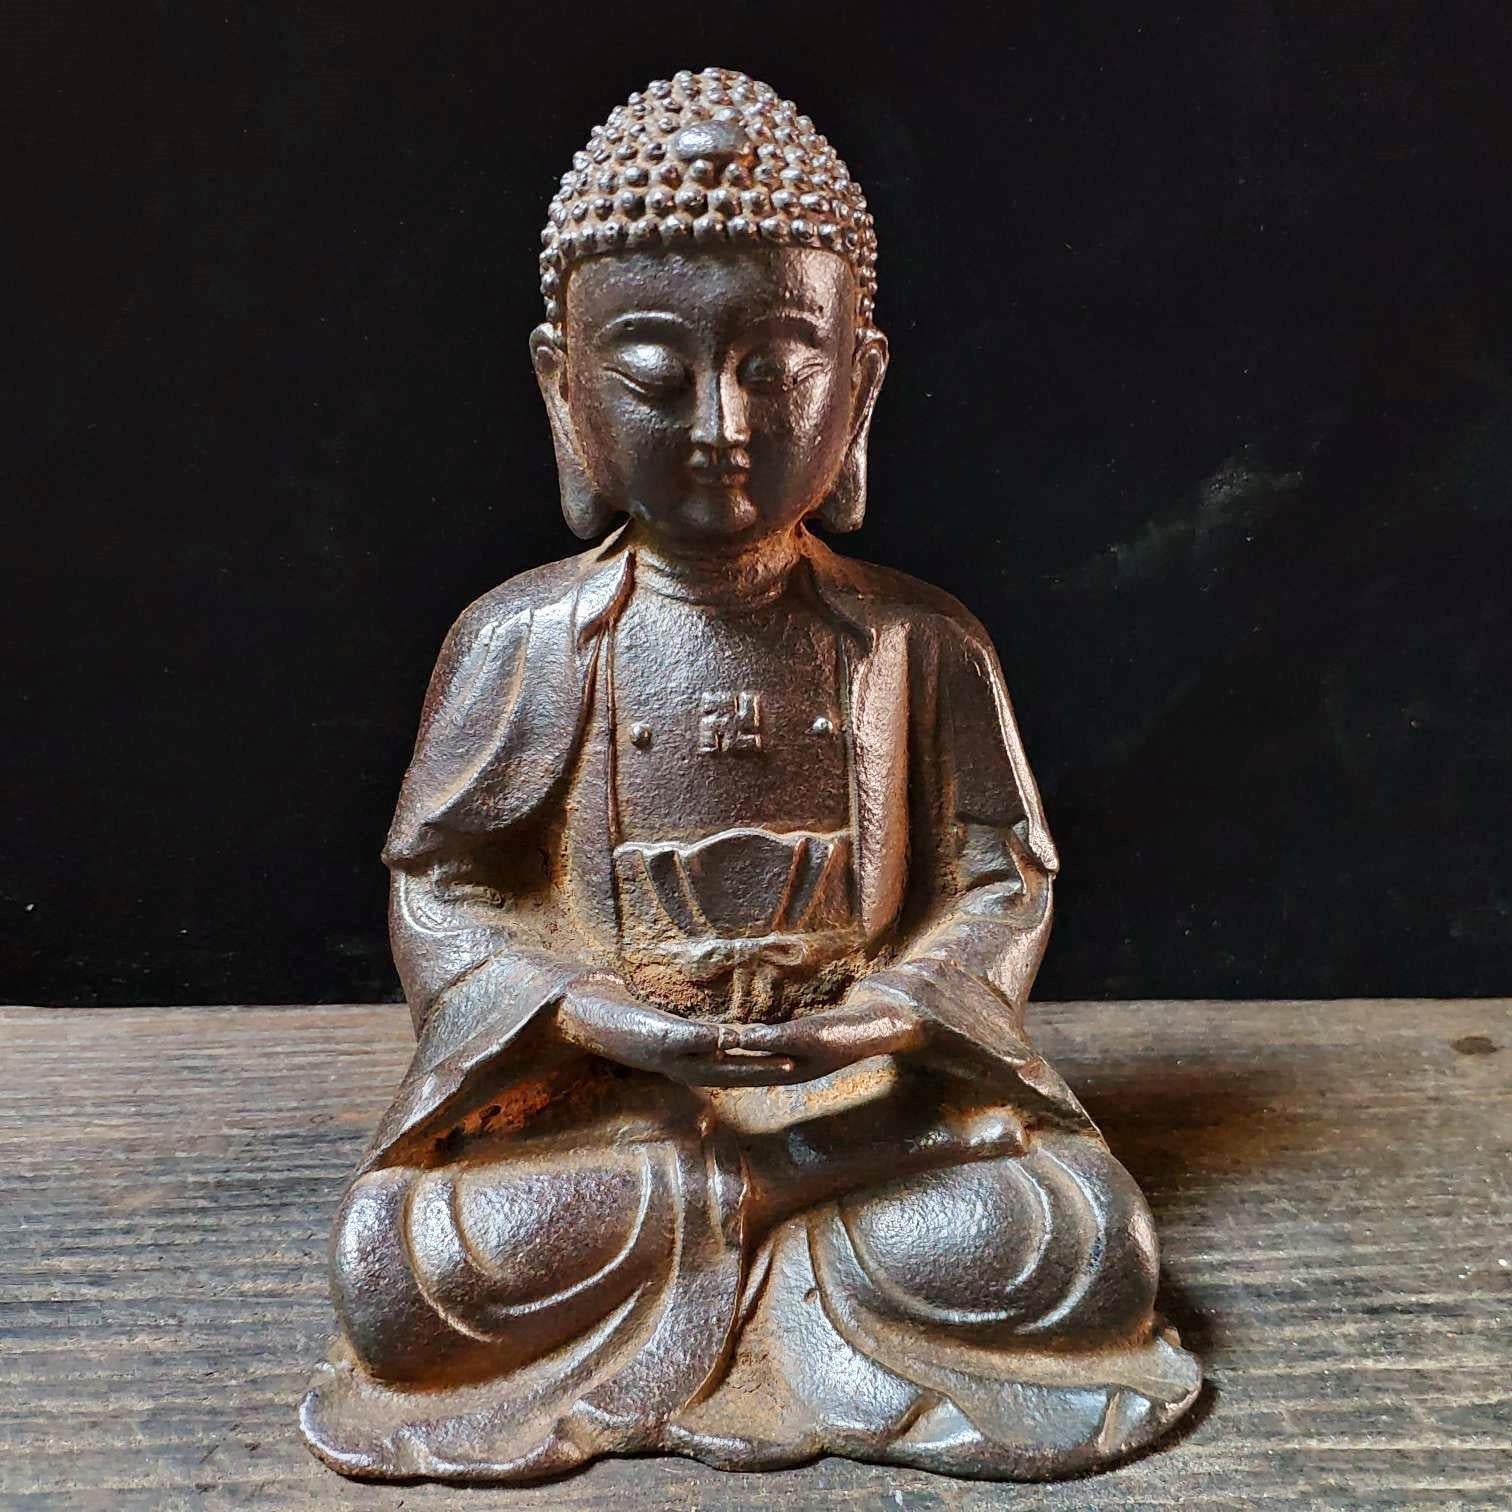 Dies ist eine schöne chinesische Vintage Rare Iron Zazen Buddha-Statue.

Zazen ist eine Form der sitzenden Meditation, die in der Tradition des Zen-Buddhismus praktiziert wird. Dazu gehört das Sitzen in einer bestimmten Haltung mit konzentriertem